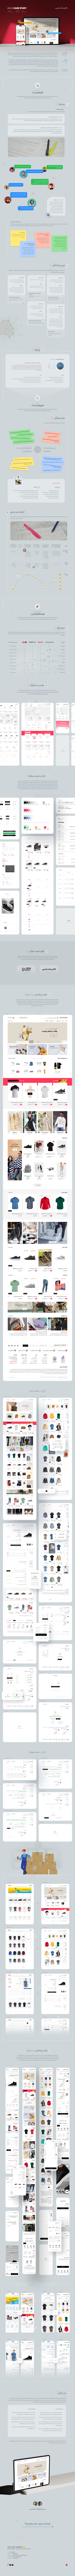 طراحی محصول و طراحی هویت بصری دایان شاپ، فروشگاه اینترنتی مد و پوشاک